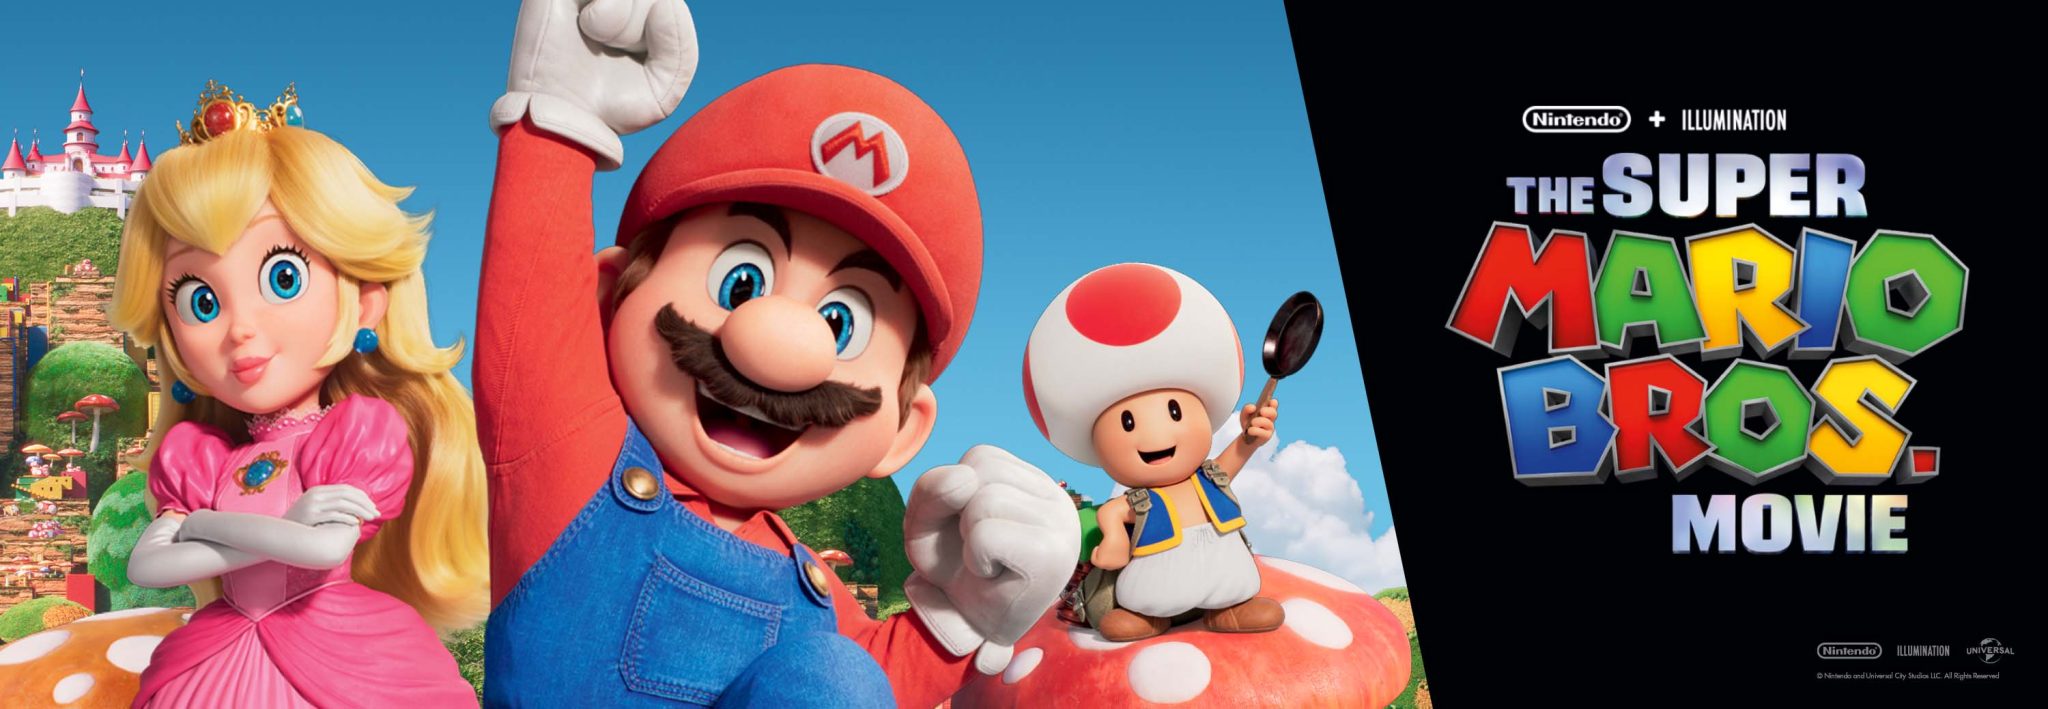 Super Mario Party™